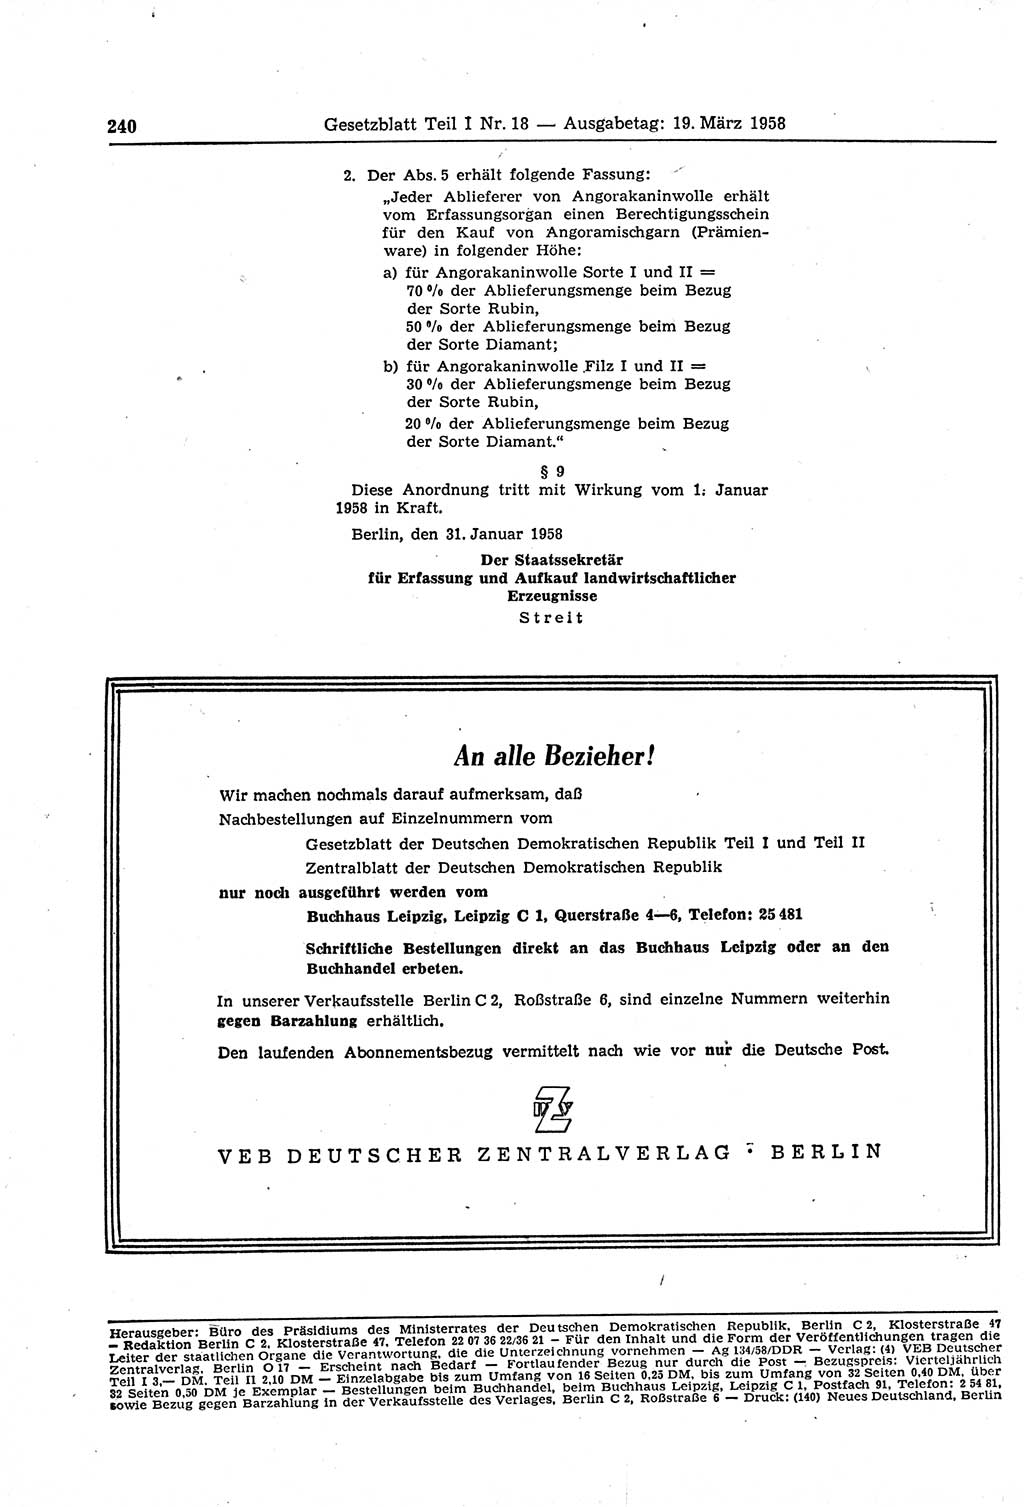 Gesetzblatt (GBl.) der Deutschen Demokratischen Republik (DDR) Teil Ⅰ 1958, Seite 240 (GBl. DDR Ⅰ 1958, S. 240)